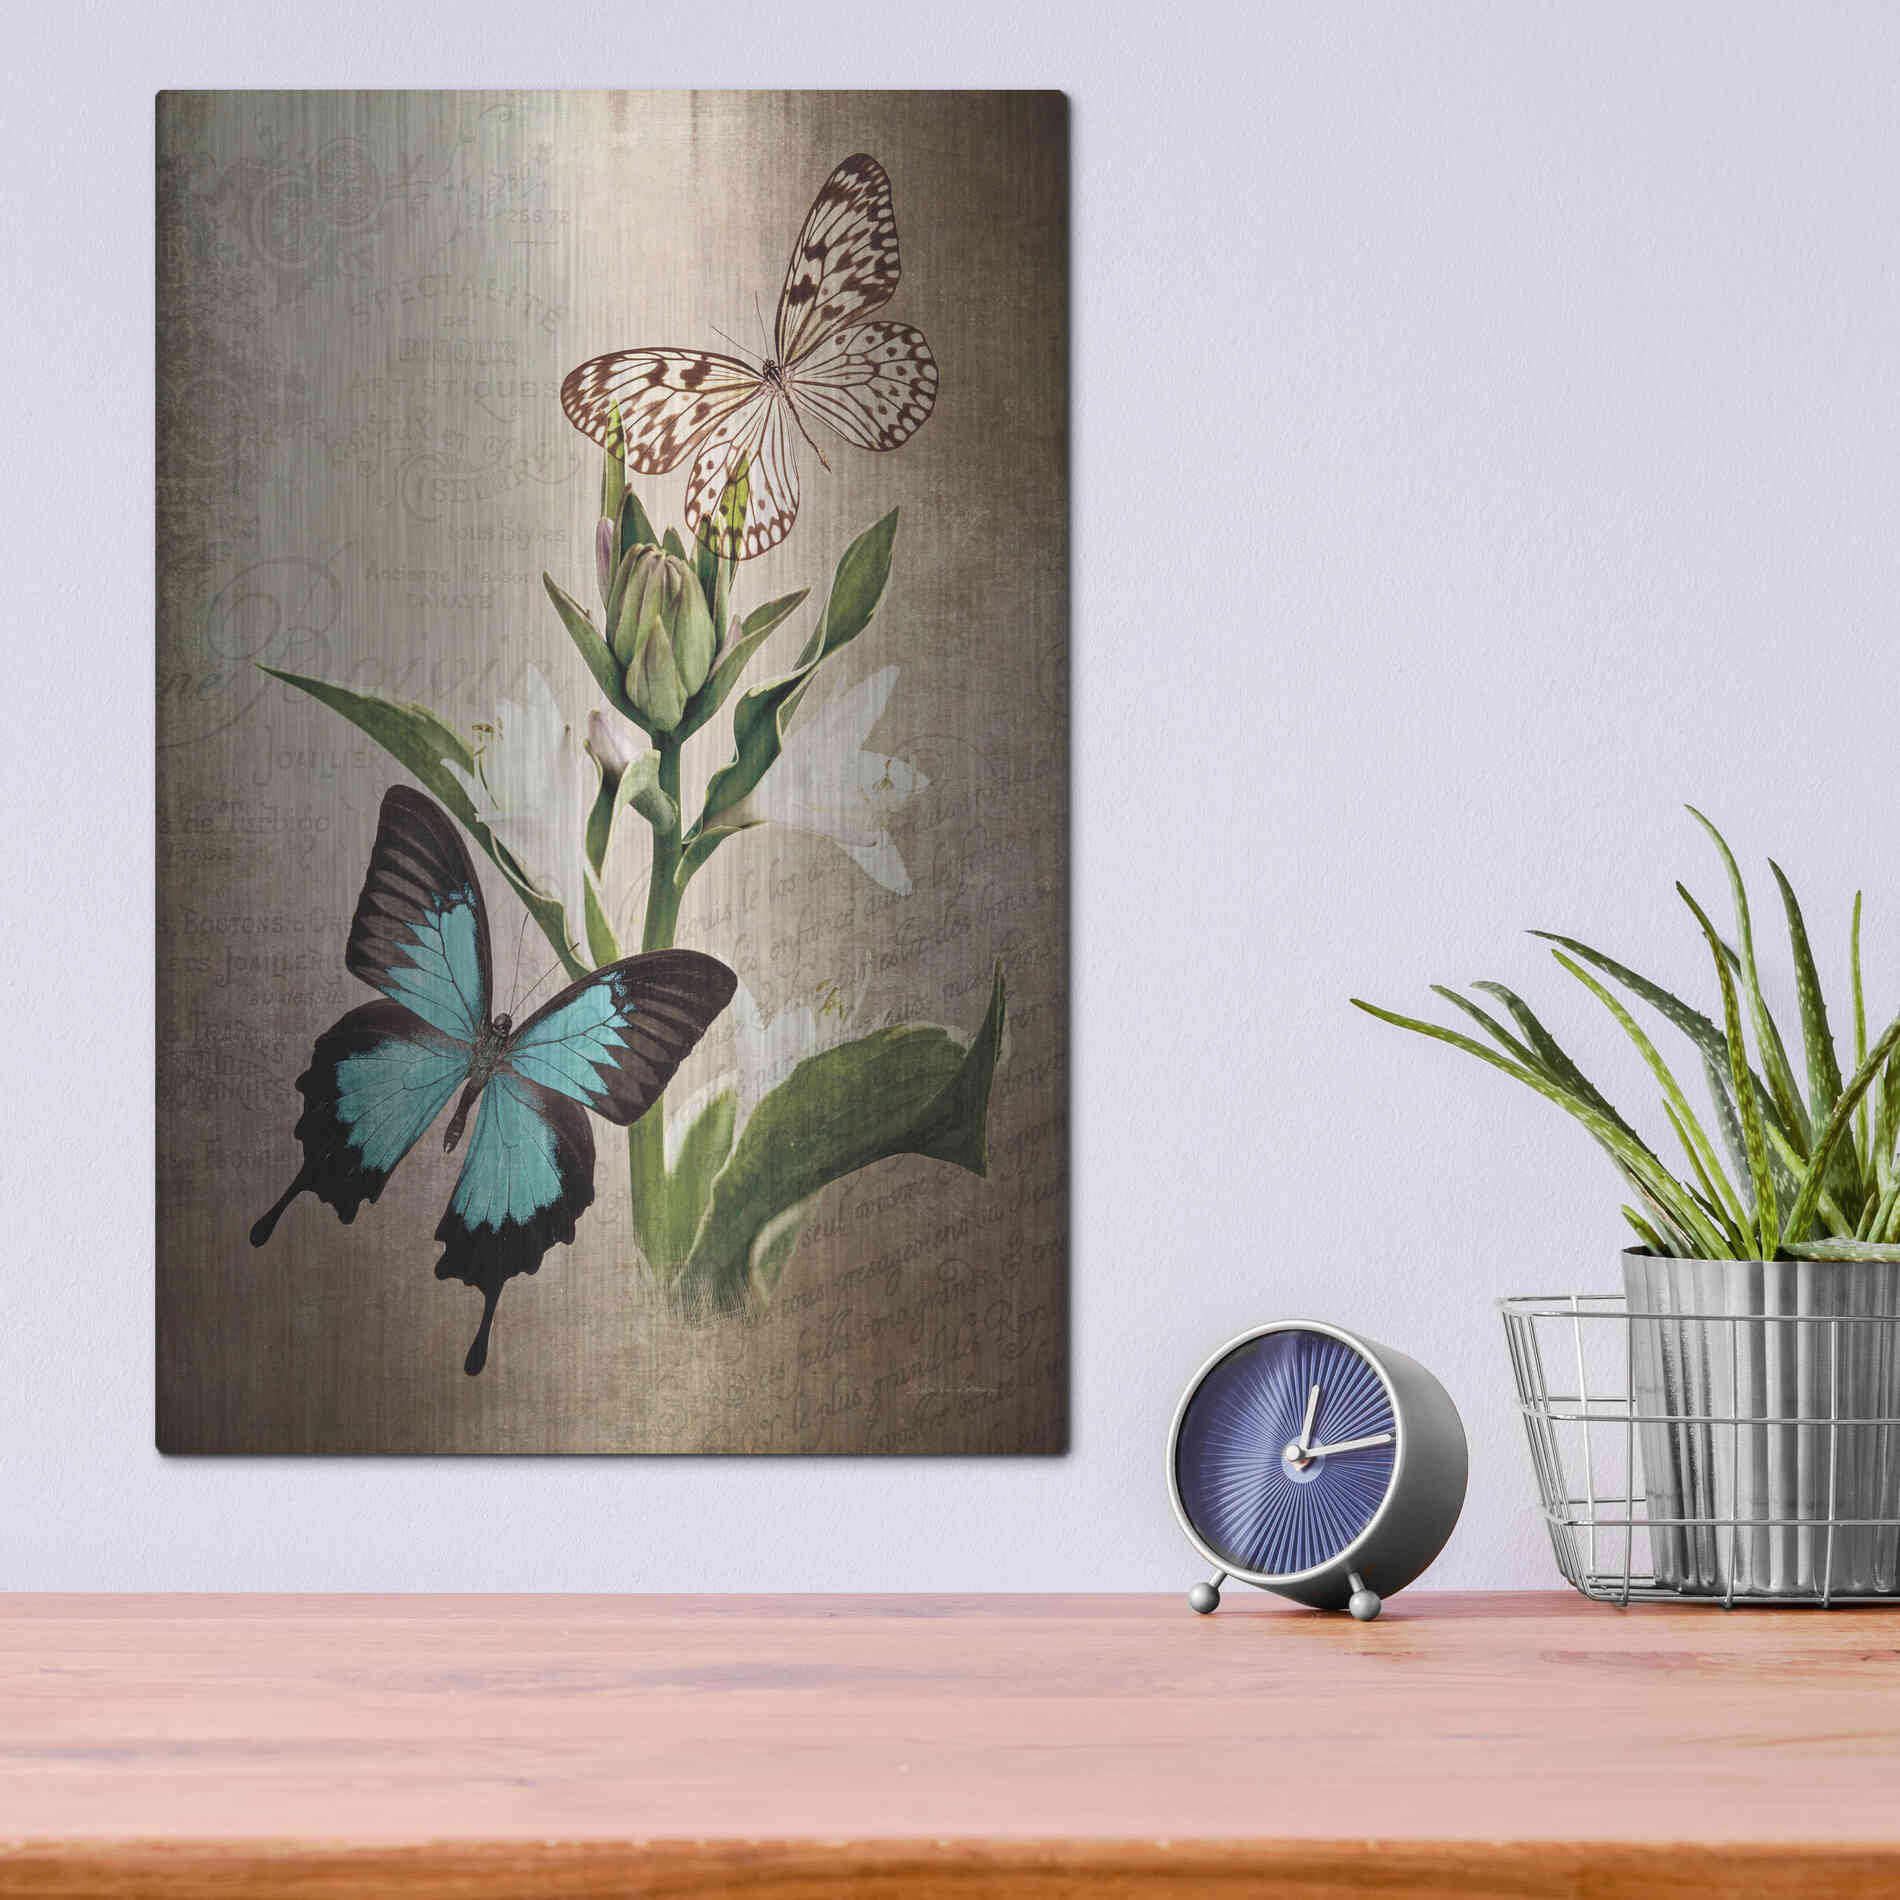 Luxe Metal Art 'Butterfly Botanical II' by Debra Van Swearingen, Metal Wall Art,12x16